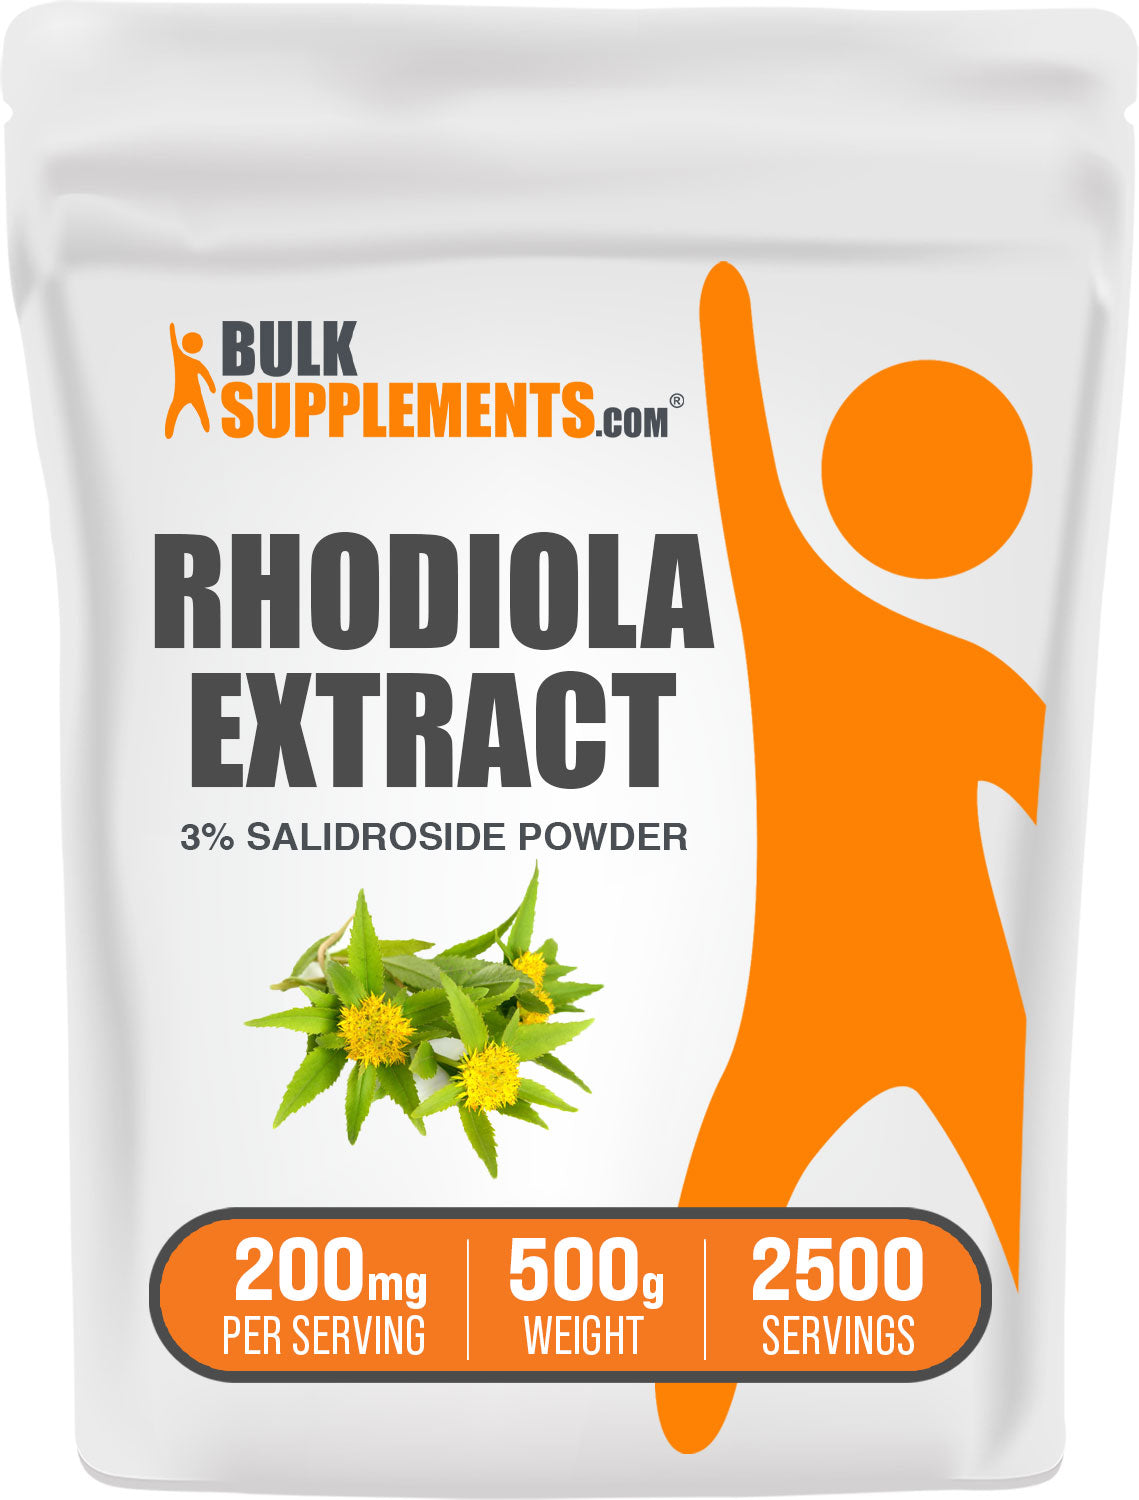 Rhodiola Salidroside 500g bag